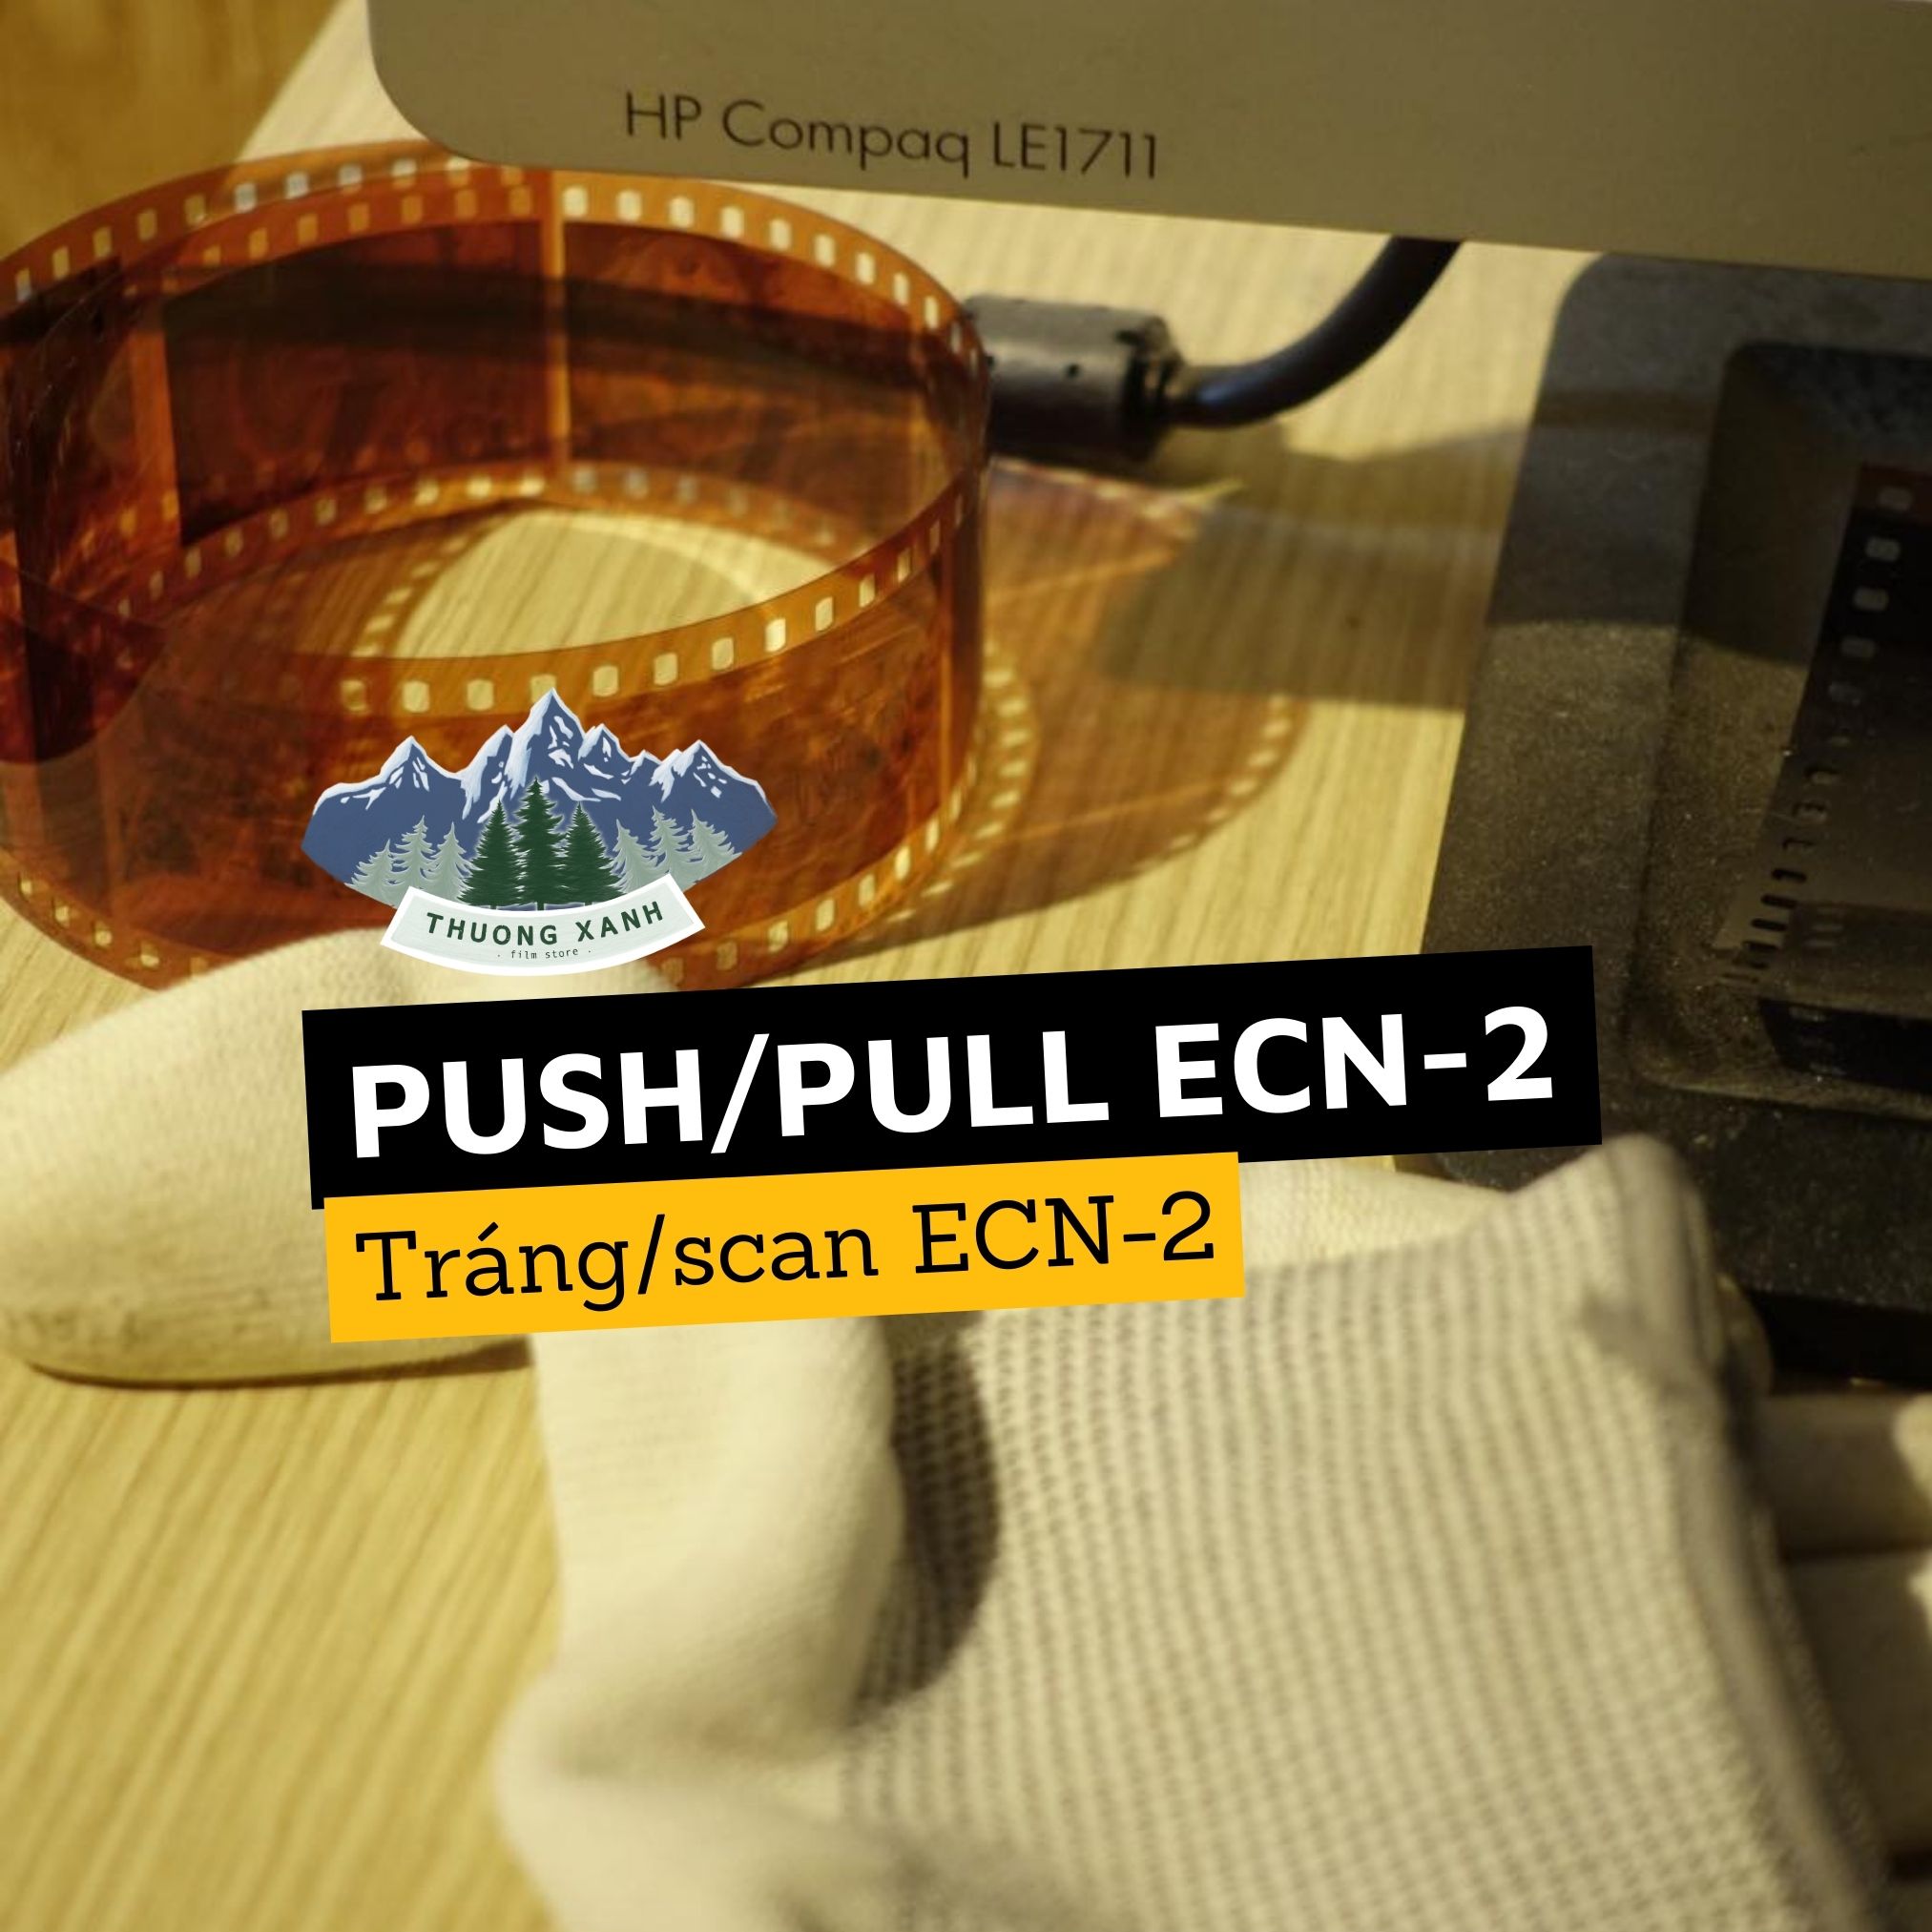  Push/Pull ECN-2 